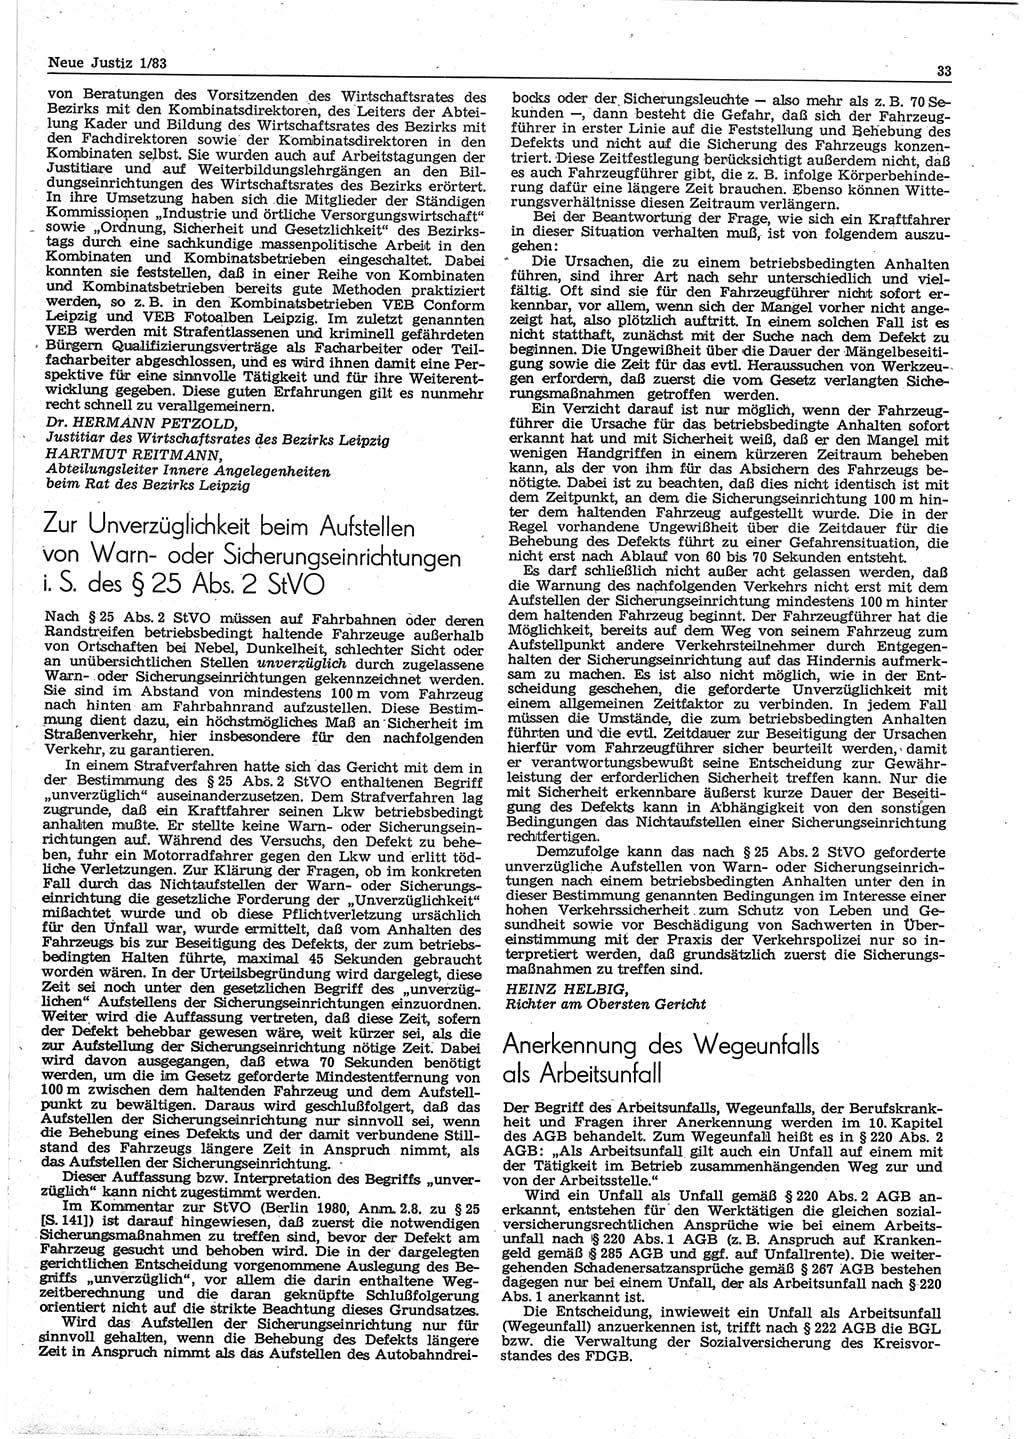 Neue Justiz (NJ), Zeitschrift für sozialistisches Recht und Gesetzlichkeit [Deutsche Demokratische Republik (DDR)], 37. Jahrgang 1983, Seite 33 (NJ DDR 1983, S. 33)